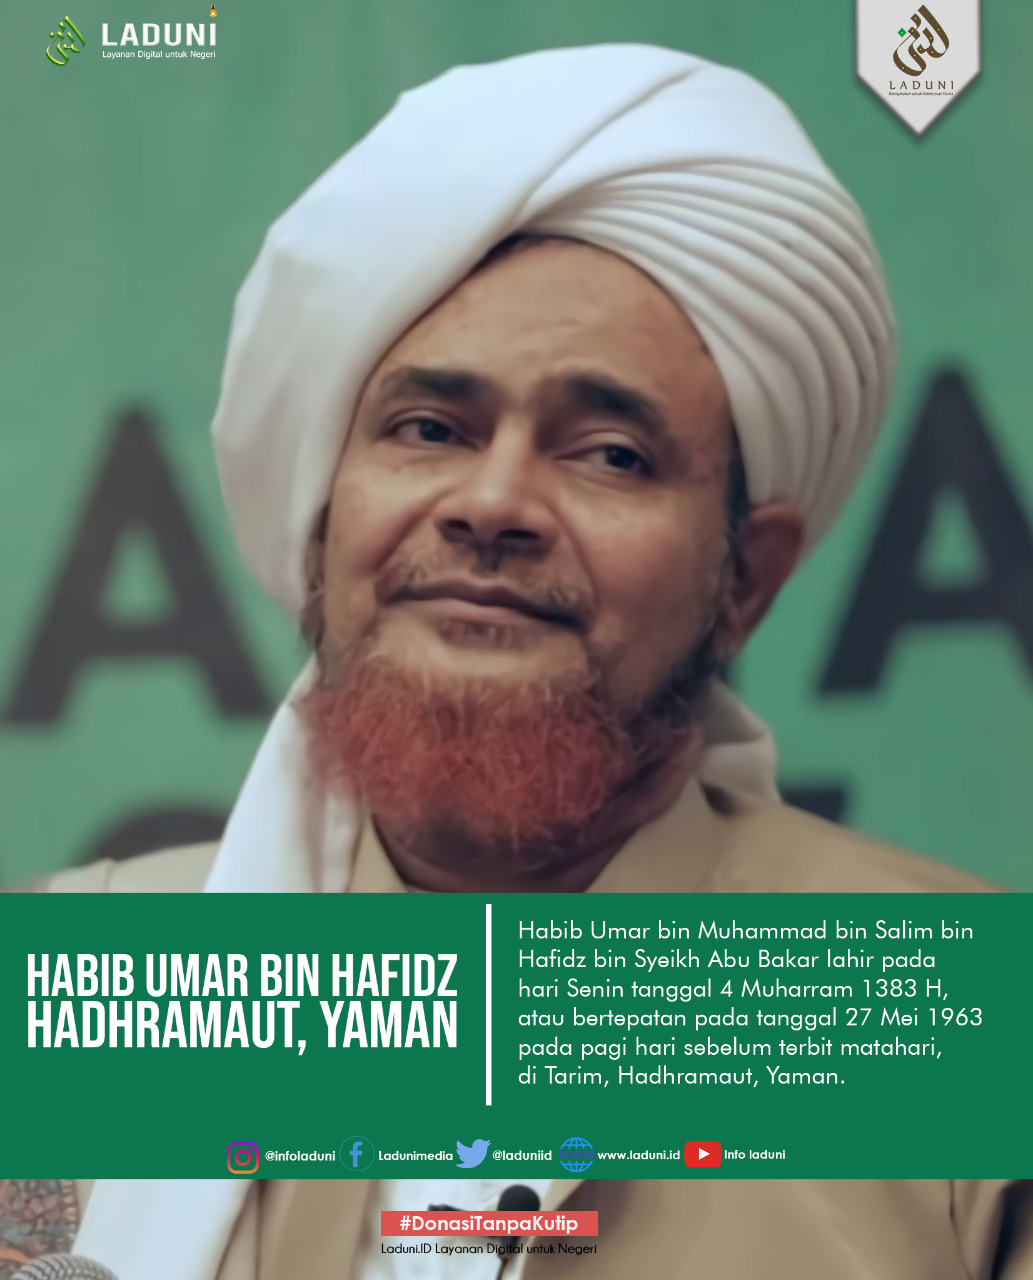 Biografi Habib Umar bin Muhammad bin Salim bin Hafidz